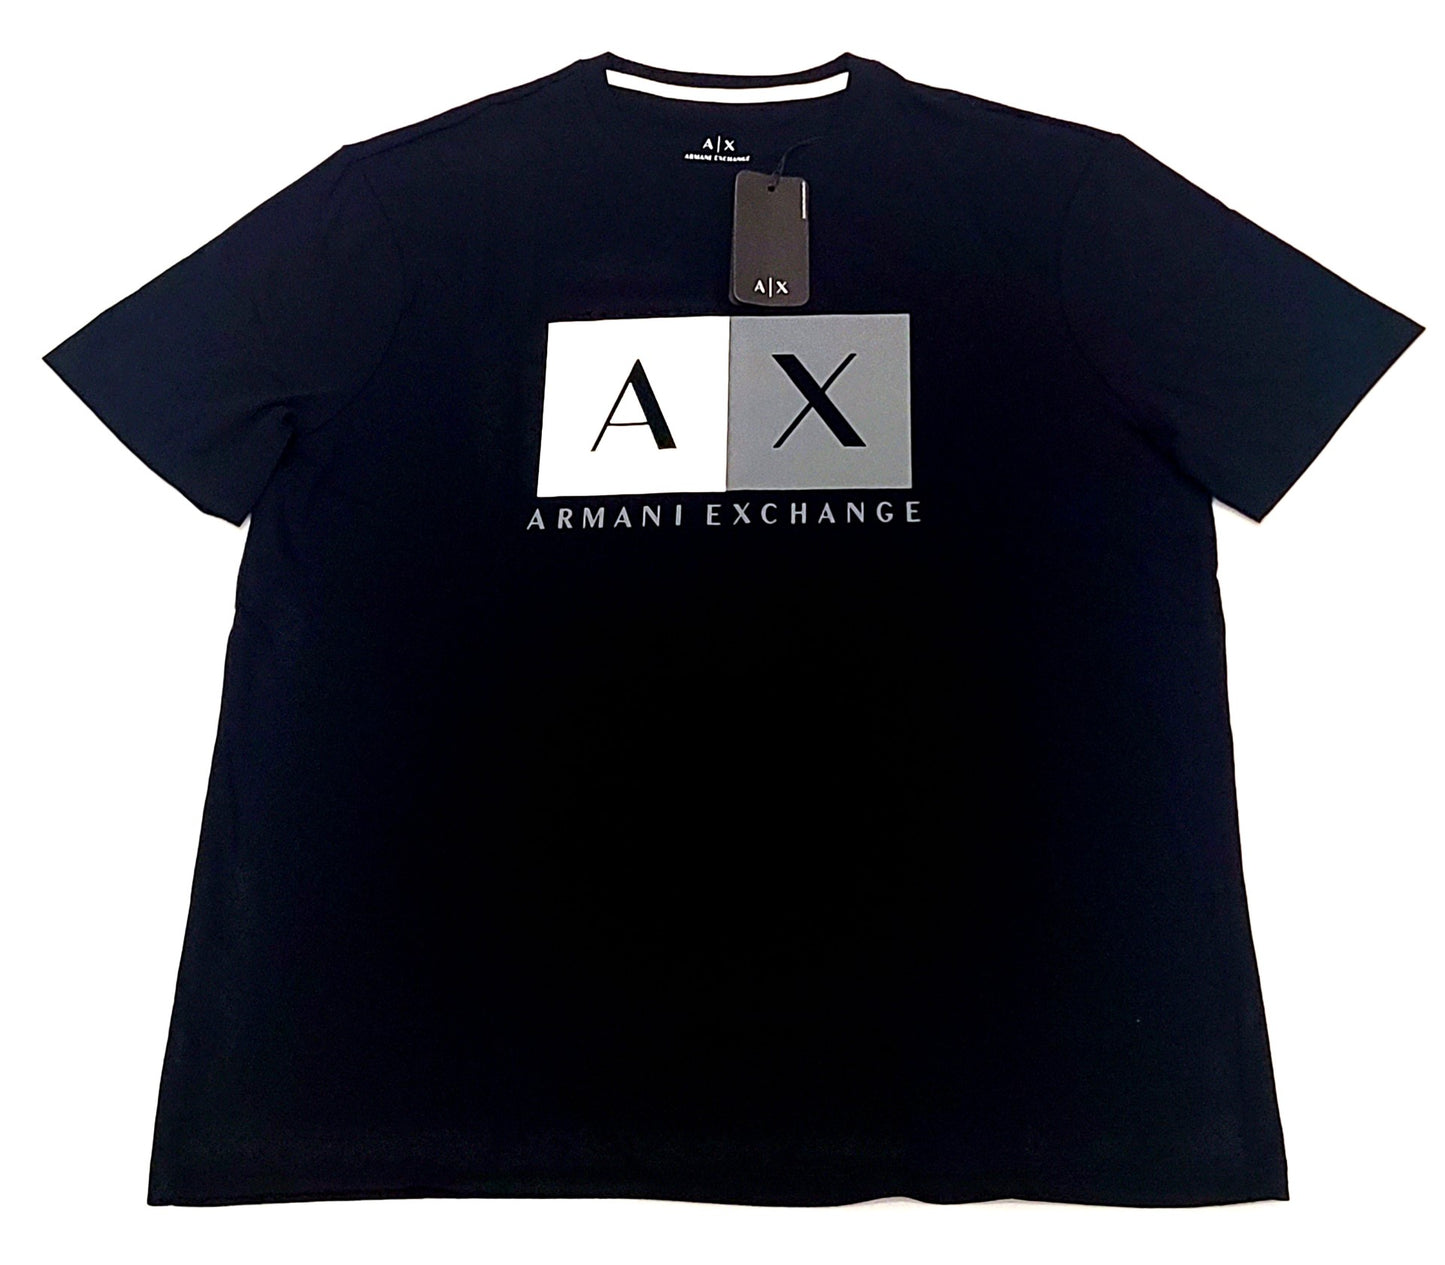 Armani Exchange T-shirt COLOR BLACK SIZE L (ORIGINAL WITH TAGS)